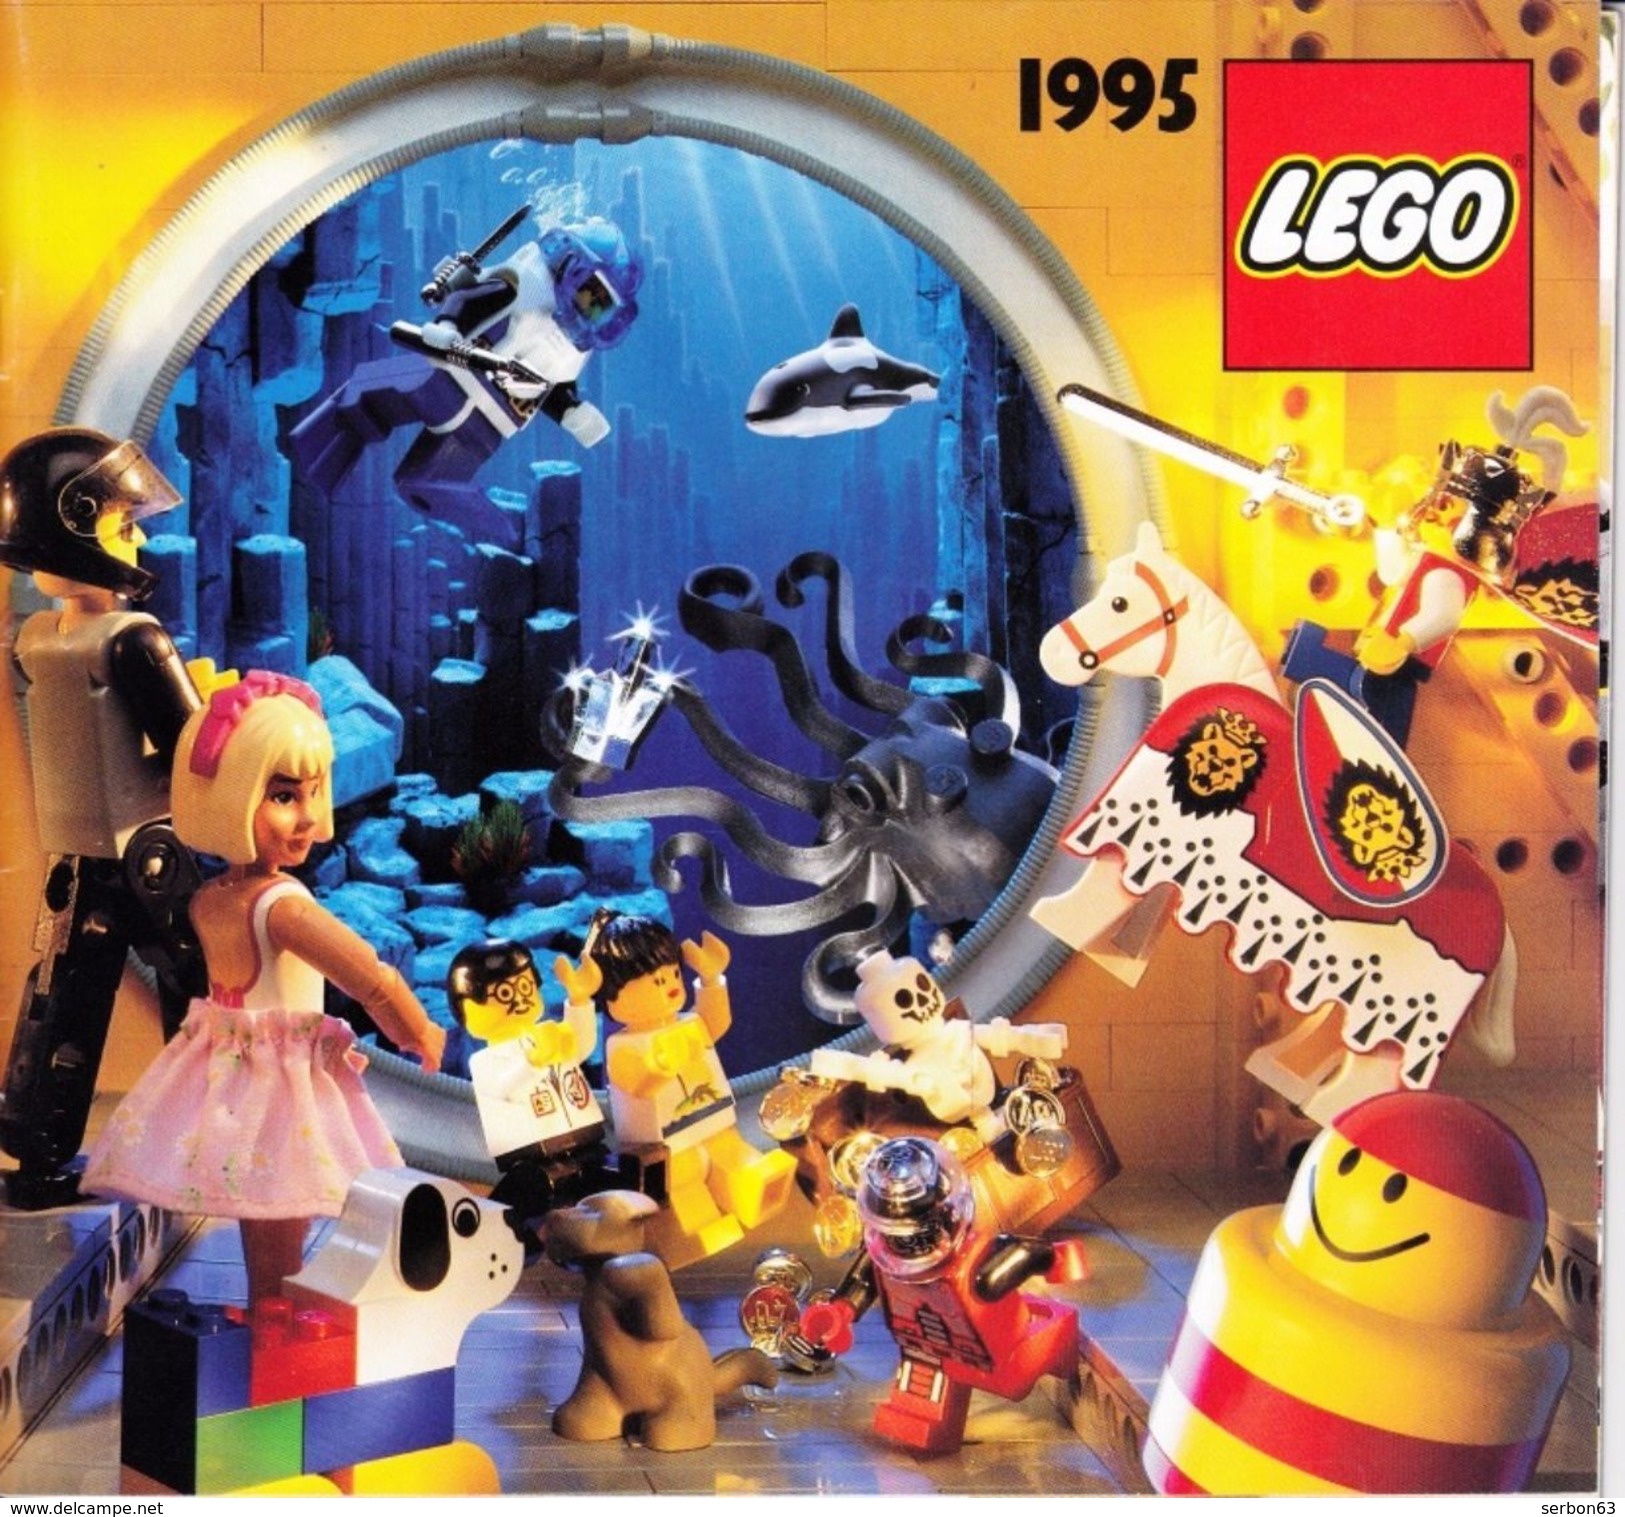 UN CATALOGUE LEGO DE 1995 56 PAGES COULEUR LEGER PLI SUR LA DE (SUR MON SITE Serbon63 DES MILLIERS D'ARTICLES EN VENTES) - Catálogos